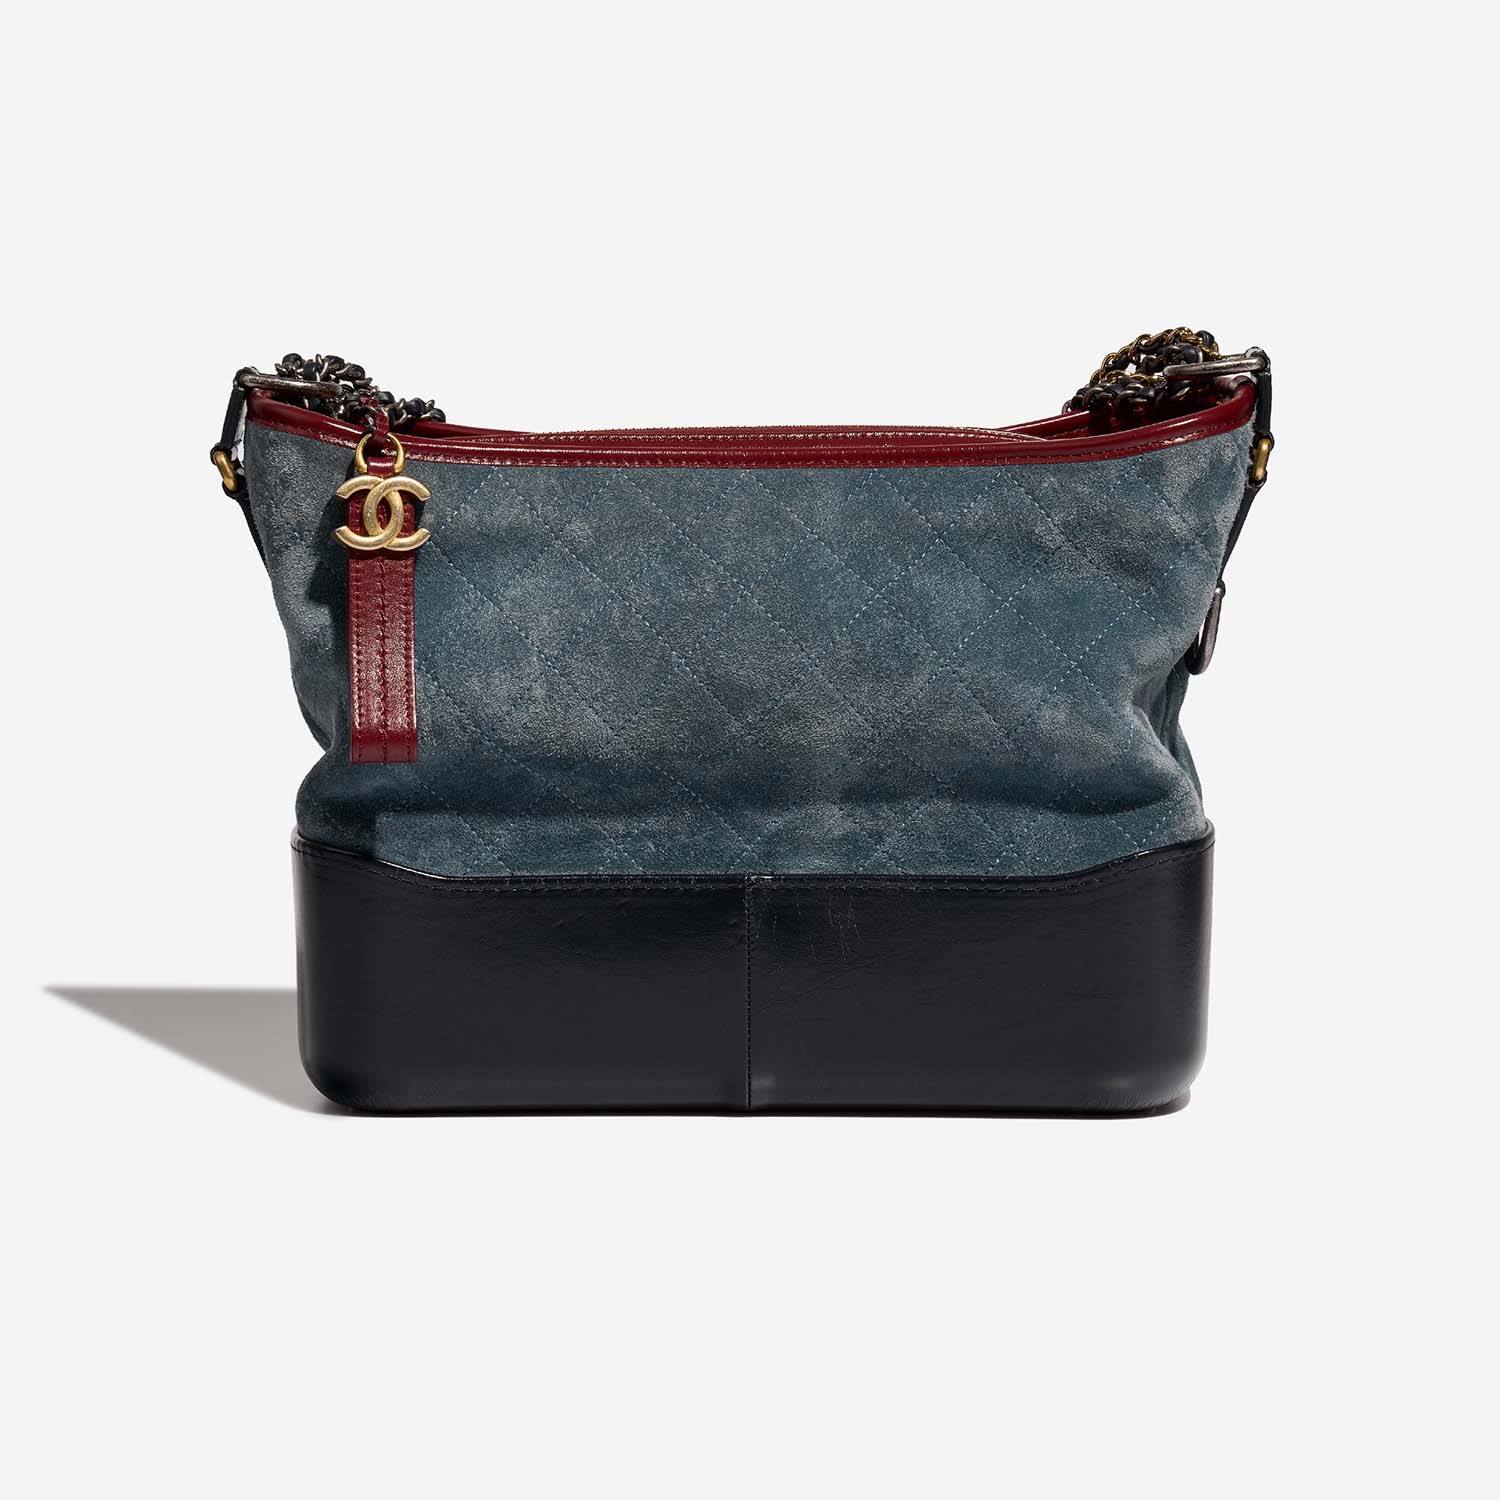 Chanel Gabrielle Medium Blau-Navy-Rot 5B S | Verkaufen Sie Ihre Designer-Tasche auf Saclab.com